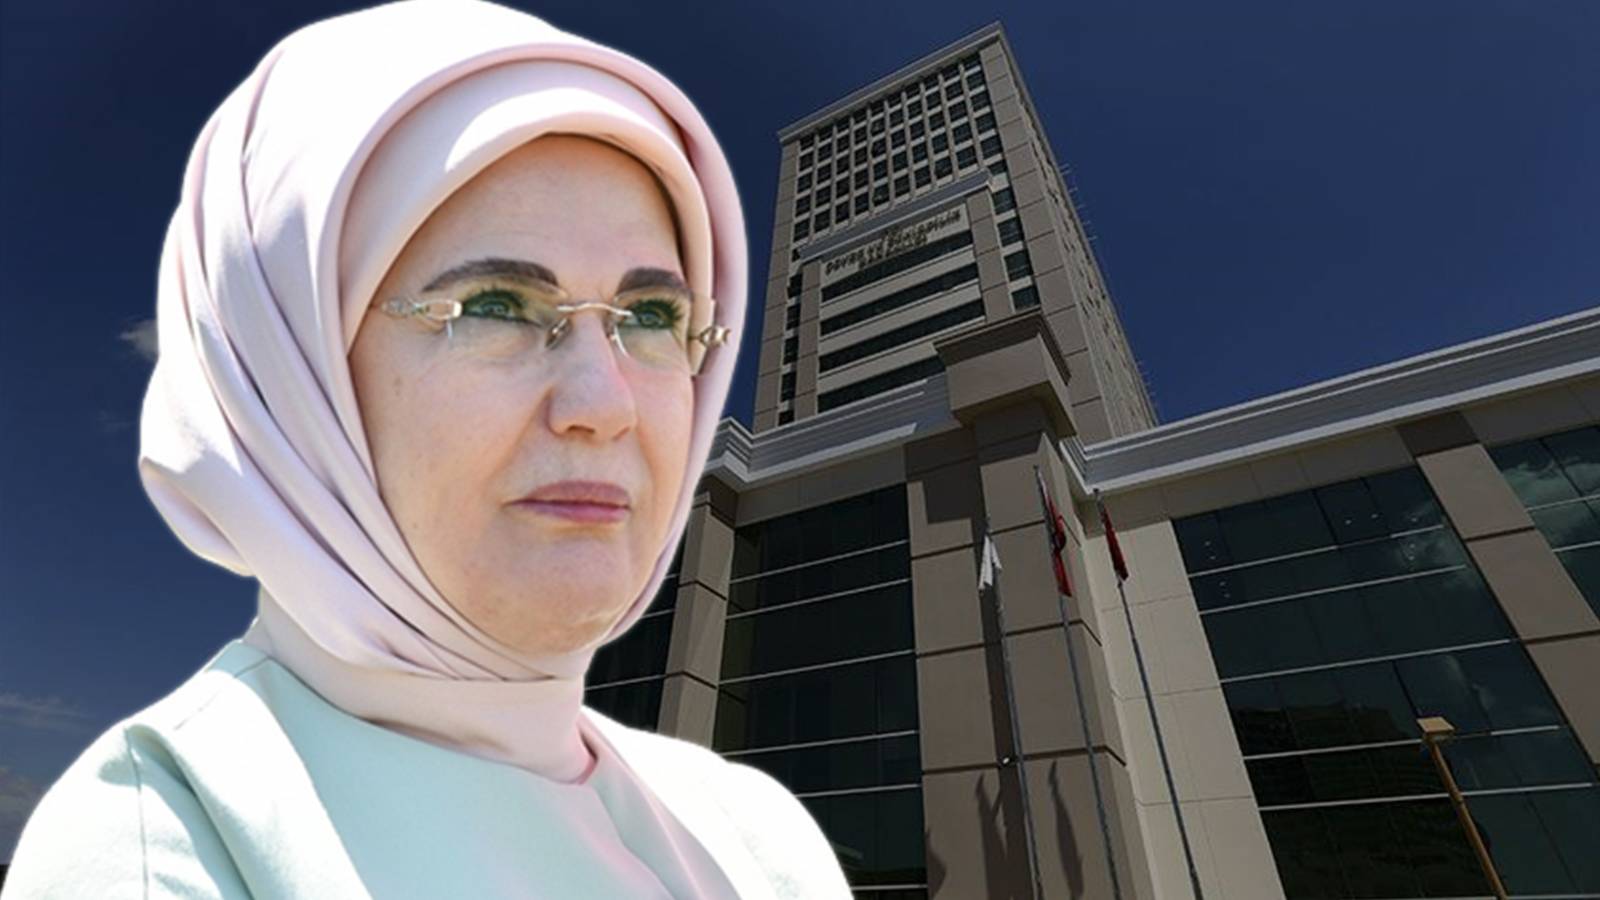 Çevre Bakanlığı bütçesinden Emine Erdoğan’ın ajansına ‘destek’